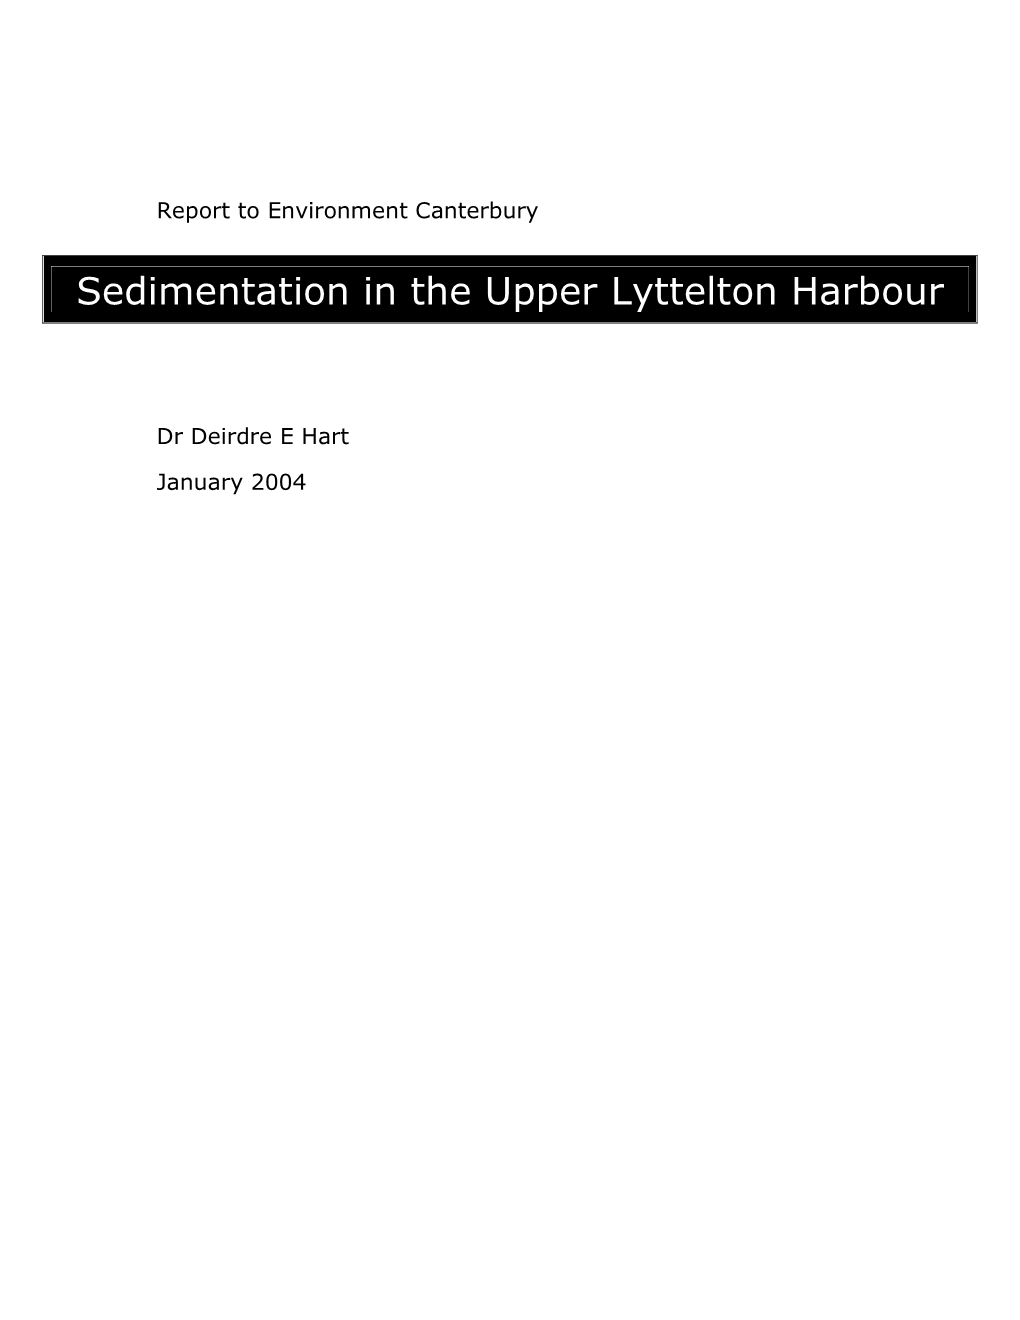 Sedimentation in the Upper Lyttelton Harbour